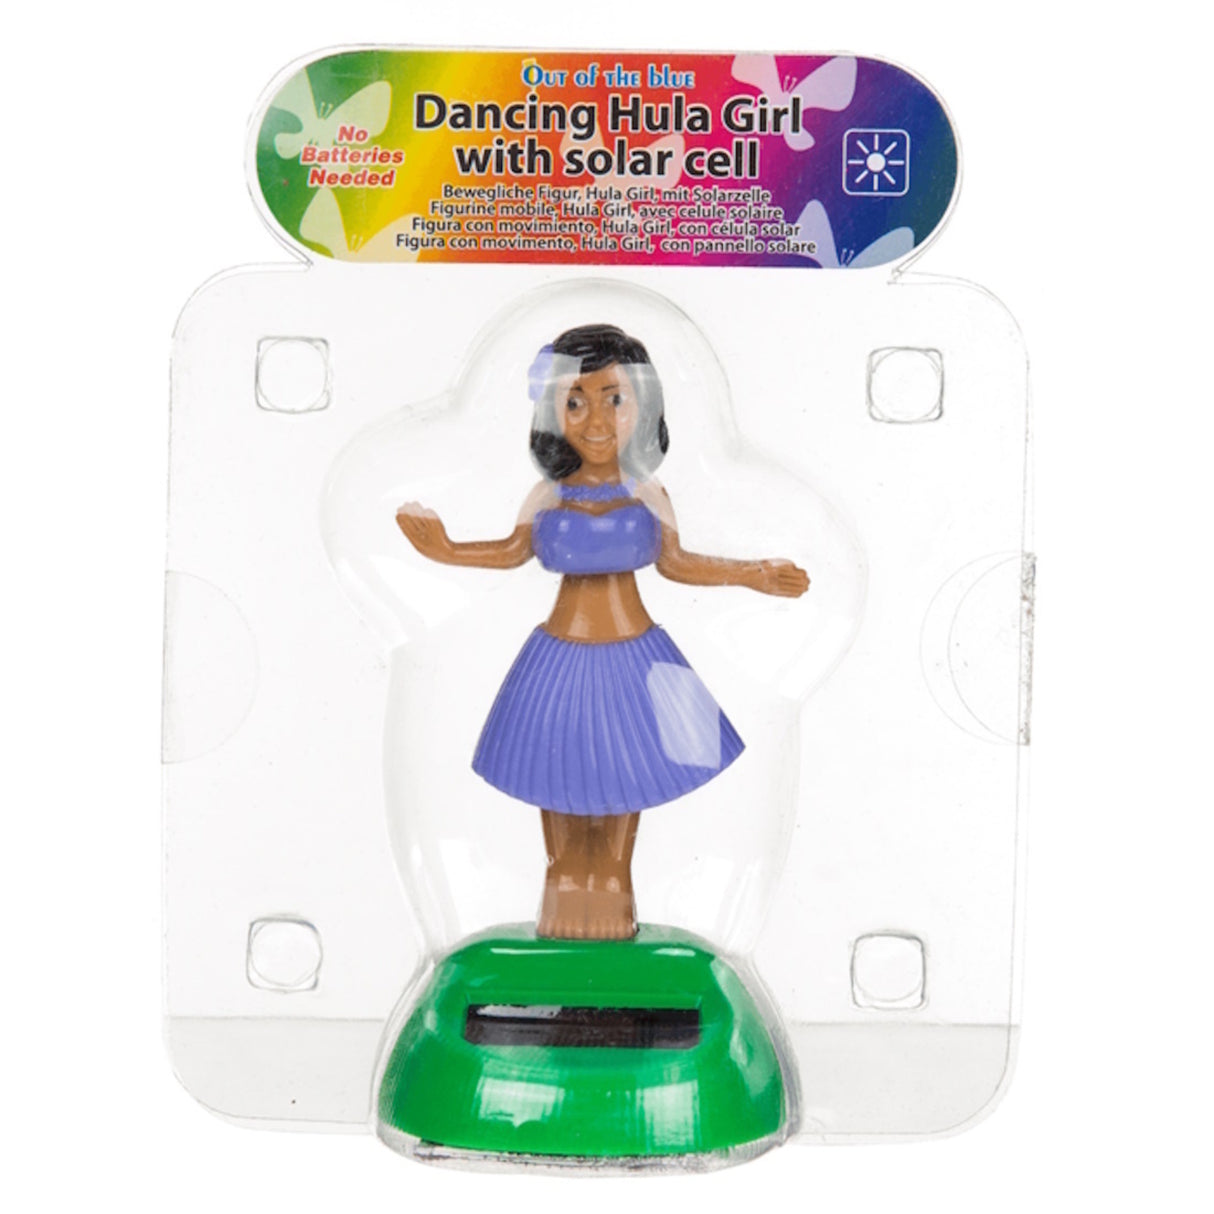 Tanzende Solarfigur Hula Girl - Jetzt kaufen und tanzen lassen